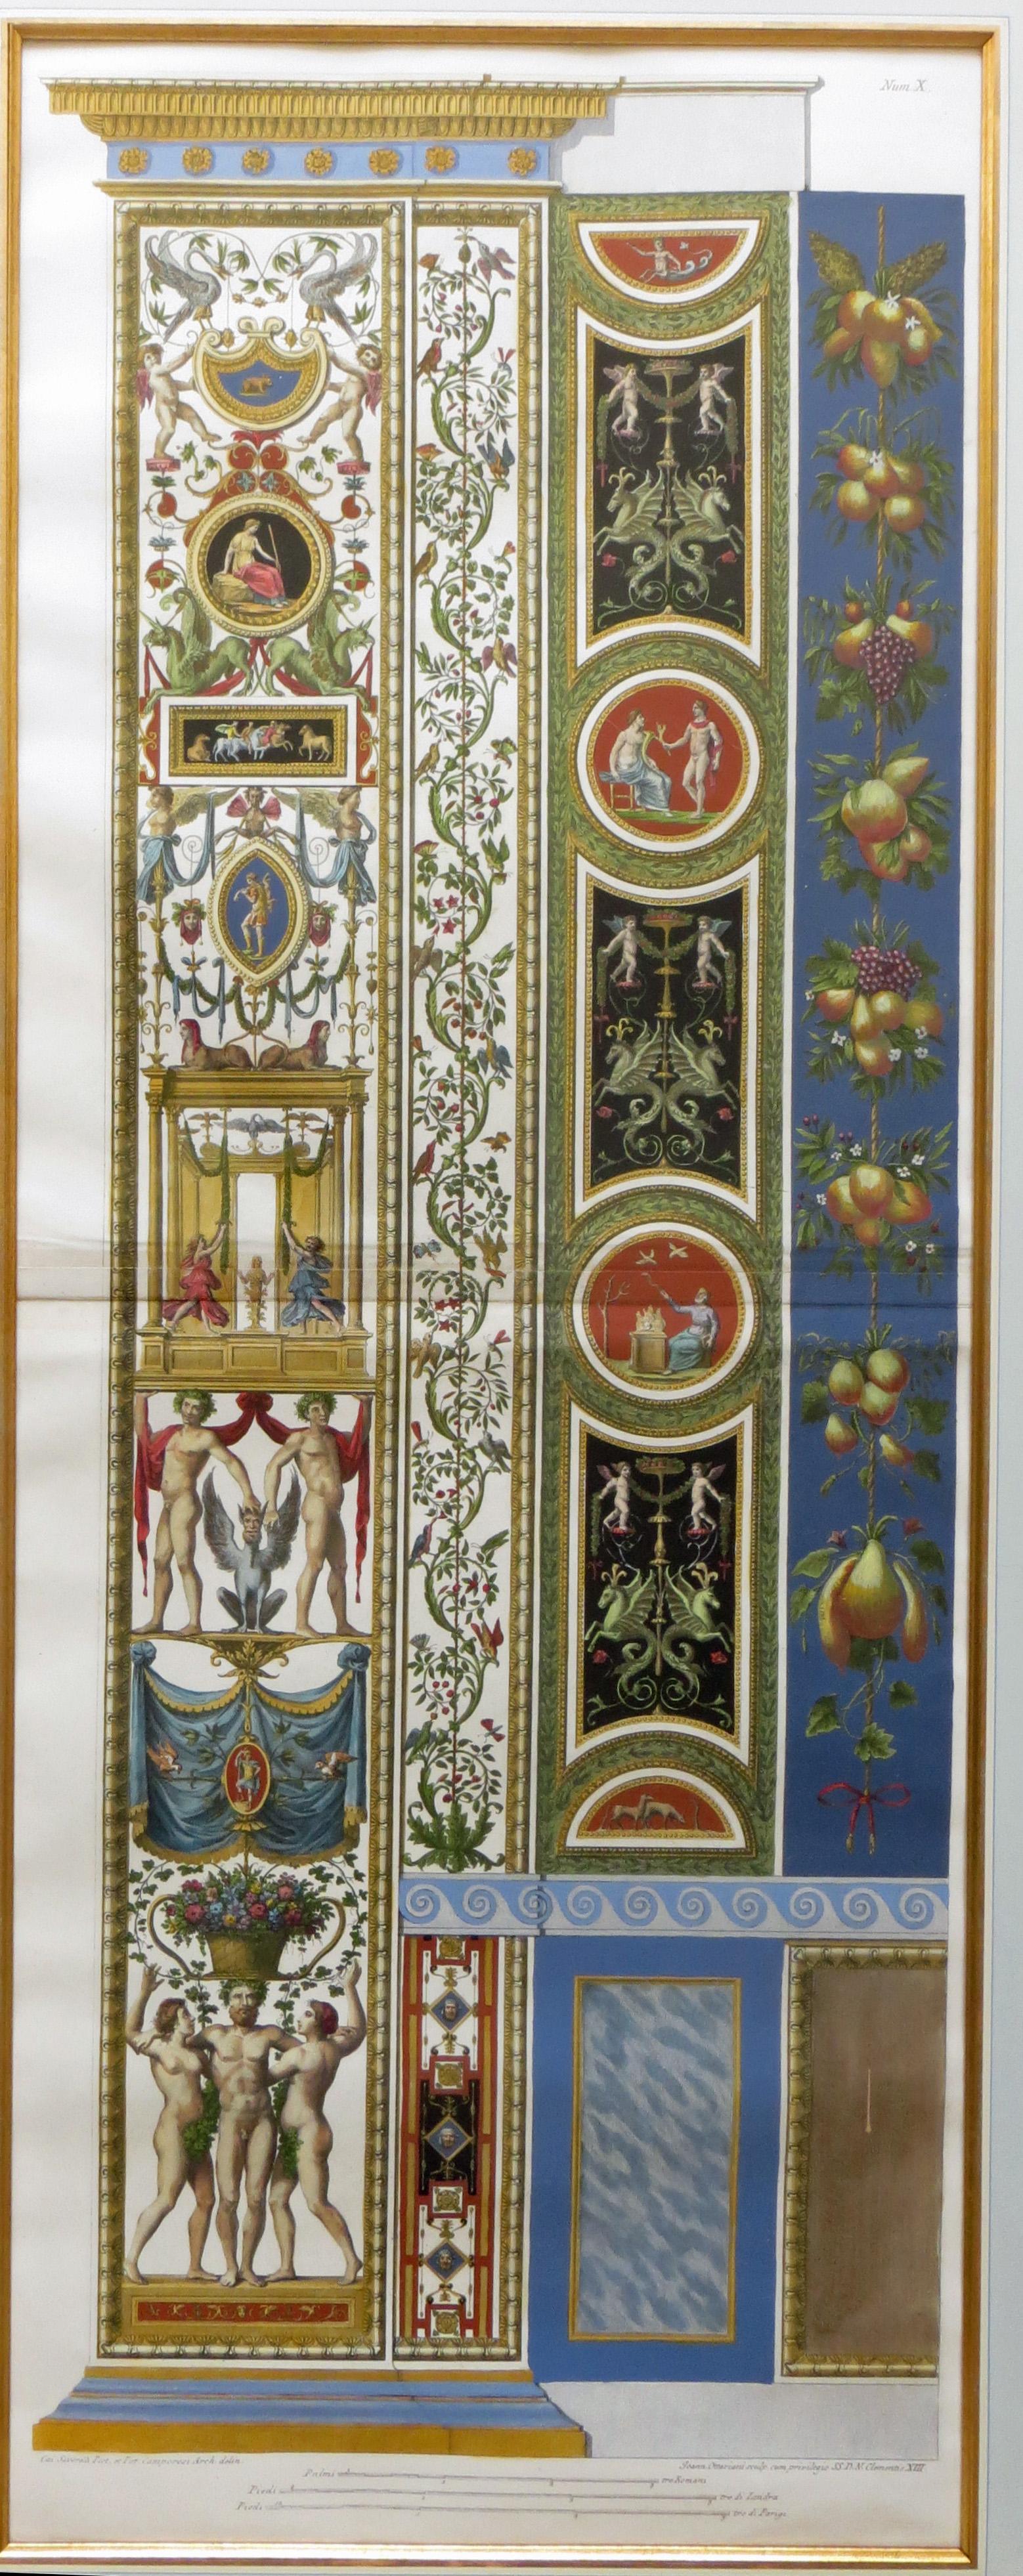 Logge di Rafaele nel Vaticano (Raphael's Loggia in the Vatican) Plate X Pilaster